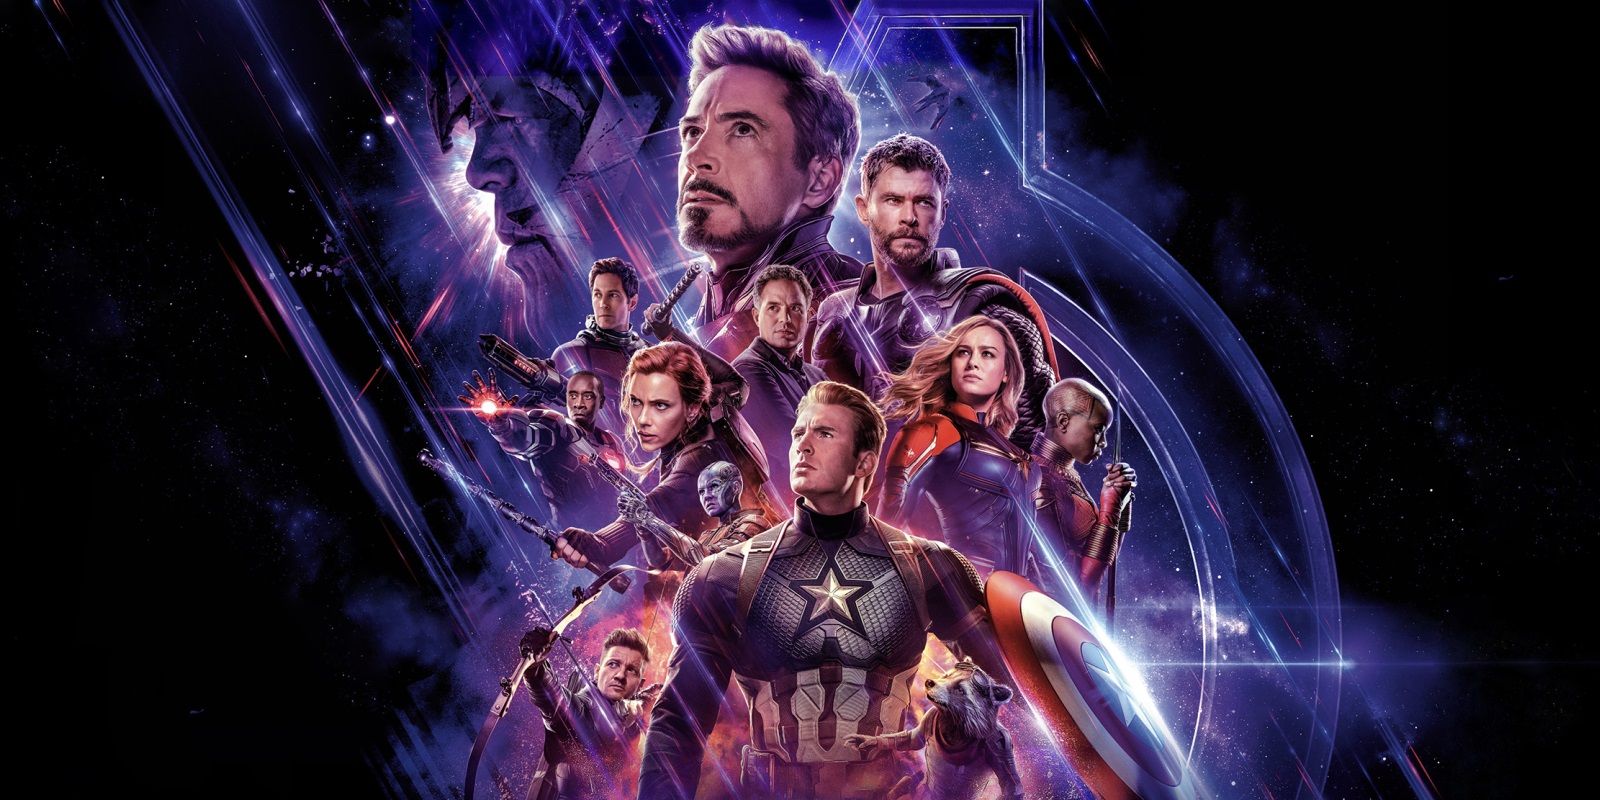 The poster for Avengers Endgame